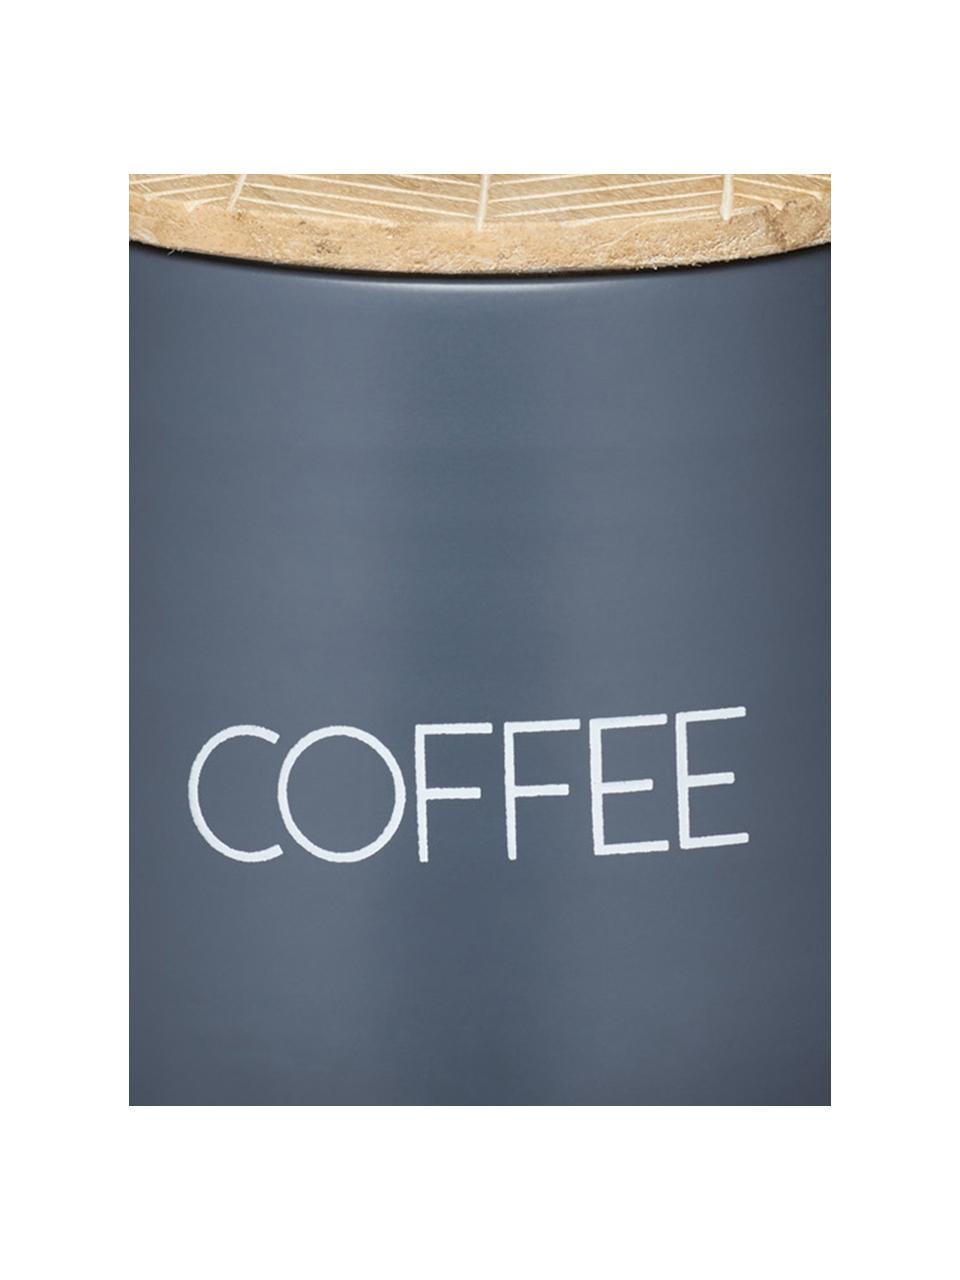 Aufbewahrungsdose Serenity Coffee, Ø 13 x H 15 cm, Dose: Stahl, beschichtet, Deckel: Mangoholz, Anthrazit, Holz, Ø 13 x H 15 cm, 1,6 L